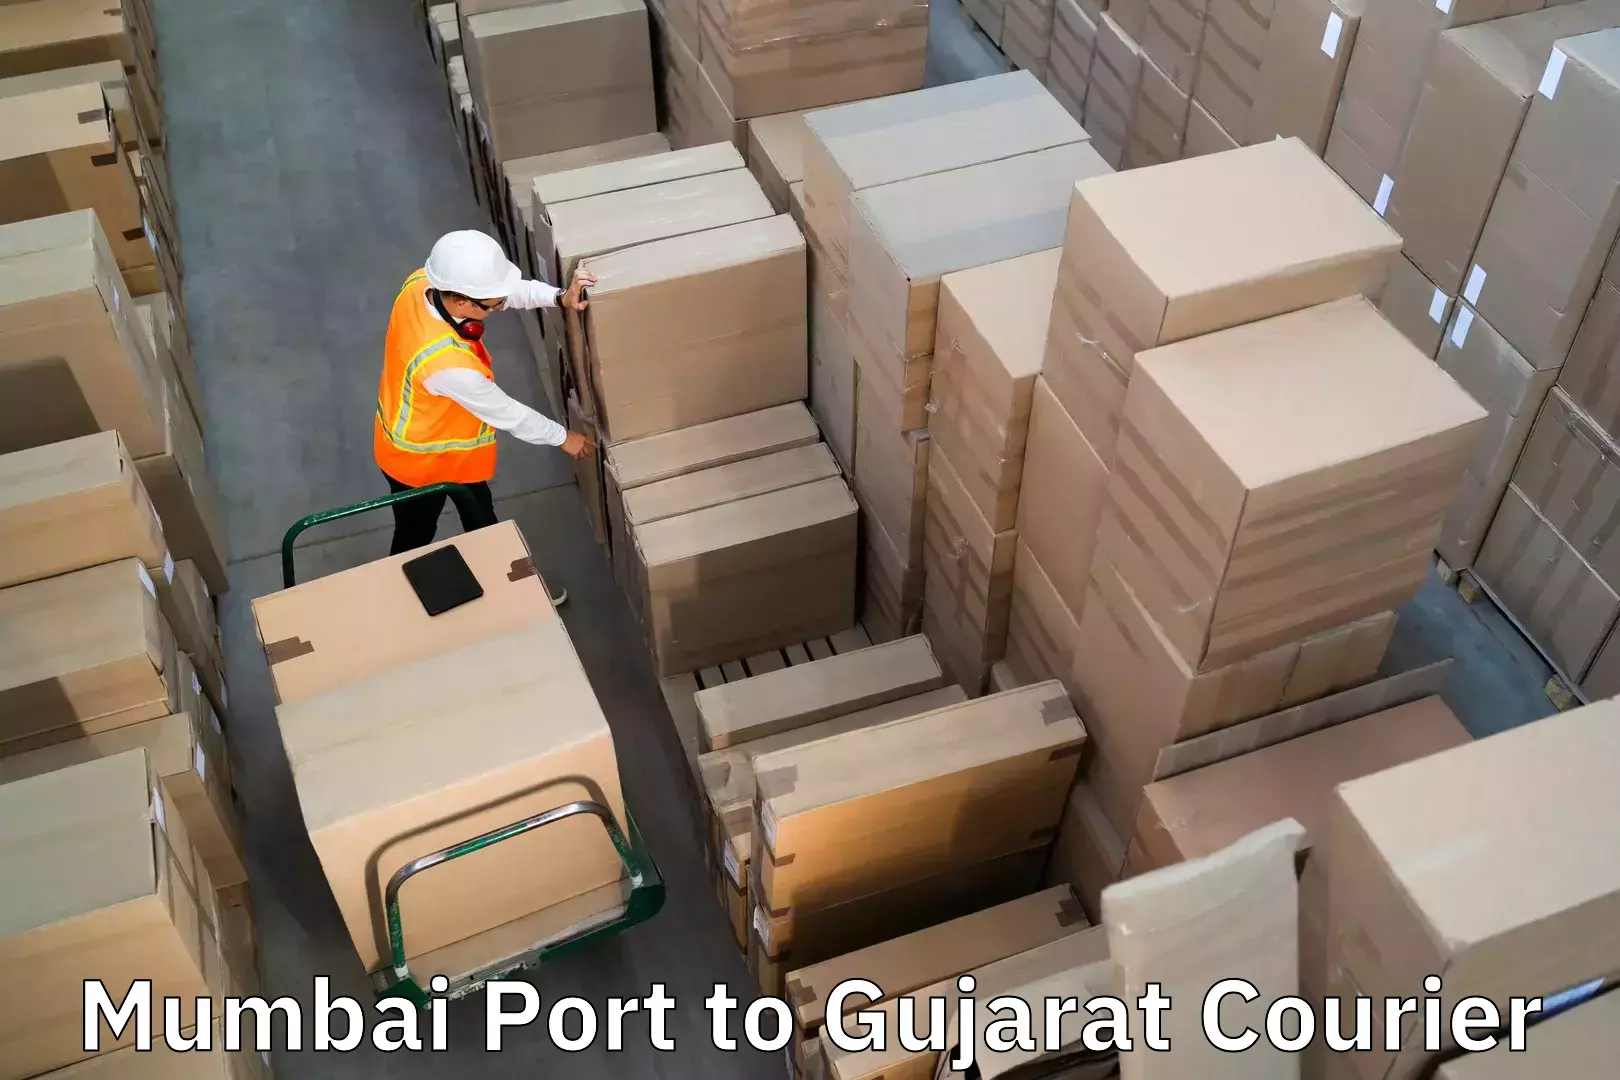 Baggage transport network Mumbai Port to Gujarat